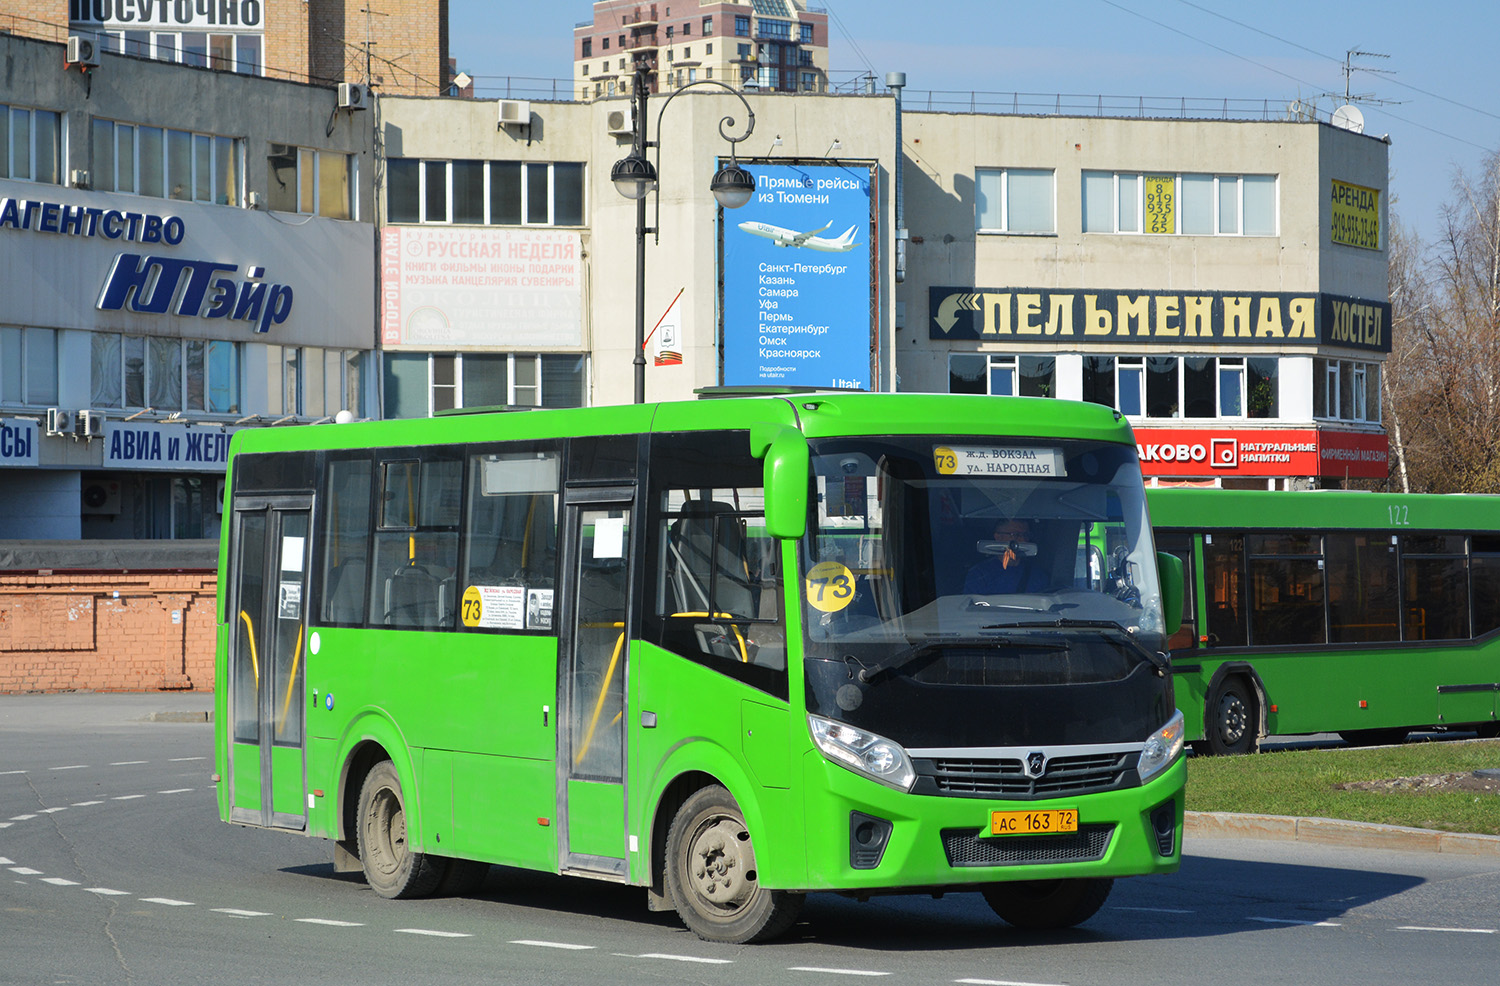 Тюменская область, ПАЗ-320435-04 "Vector Next" № АС 163 72